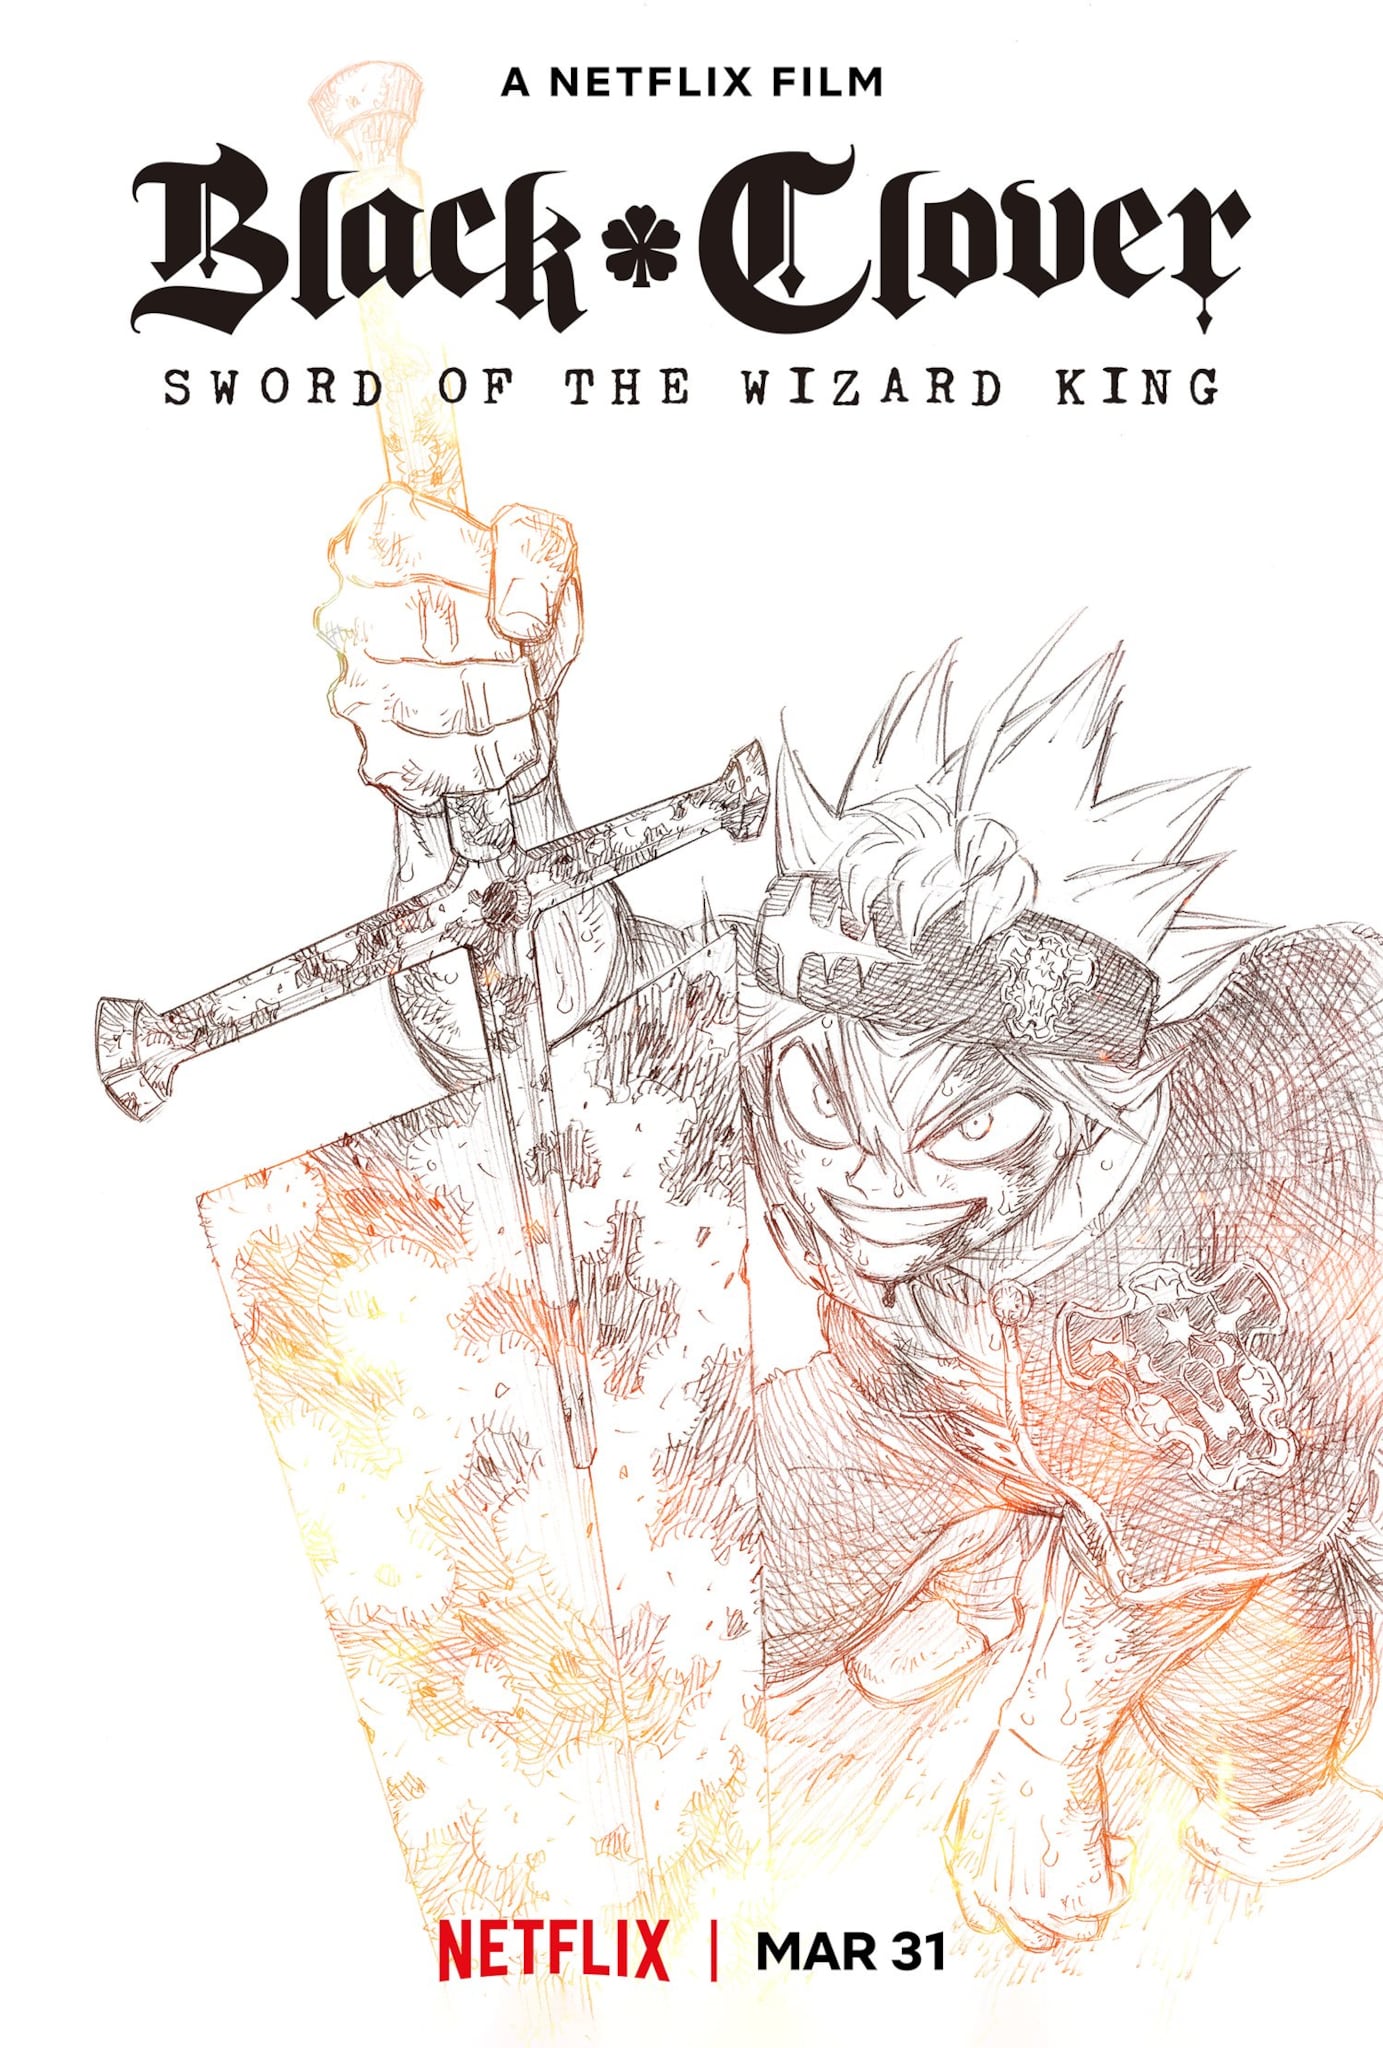 Troisième visuel pour le film Black Clover : Sword of the Wizard King